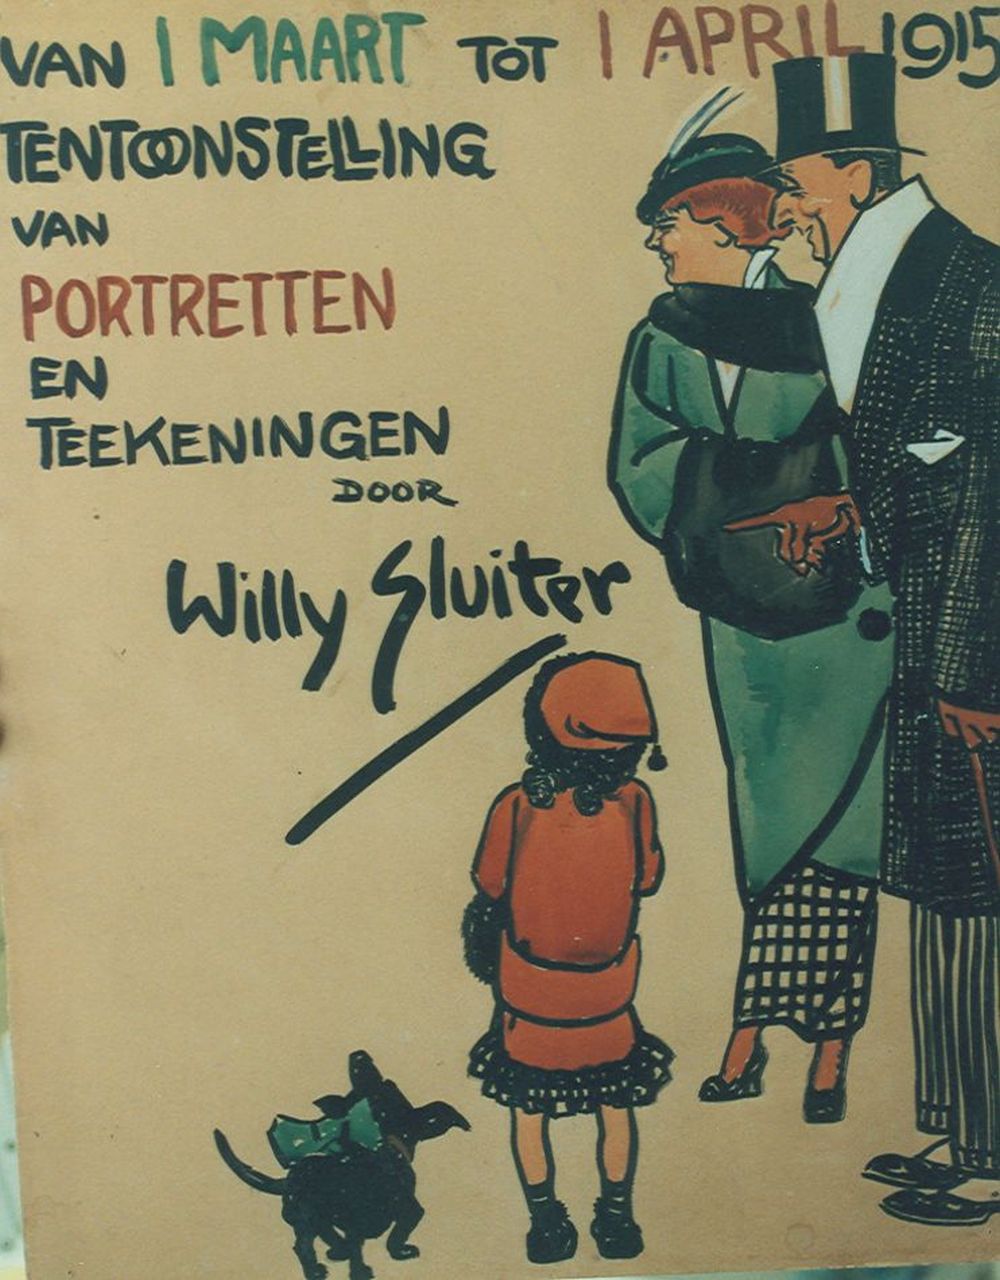 Sluiter J.W.  | Jan Willem 'Willy' Sluiter, Ontwerp affiche tentoonstelling van portretten en tekeningen, aquarel op papier 64,0 x 49,0 cm, gesigneerd midden